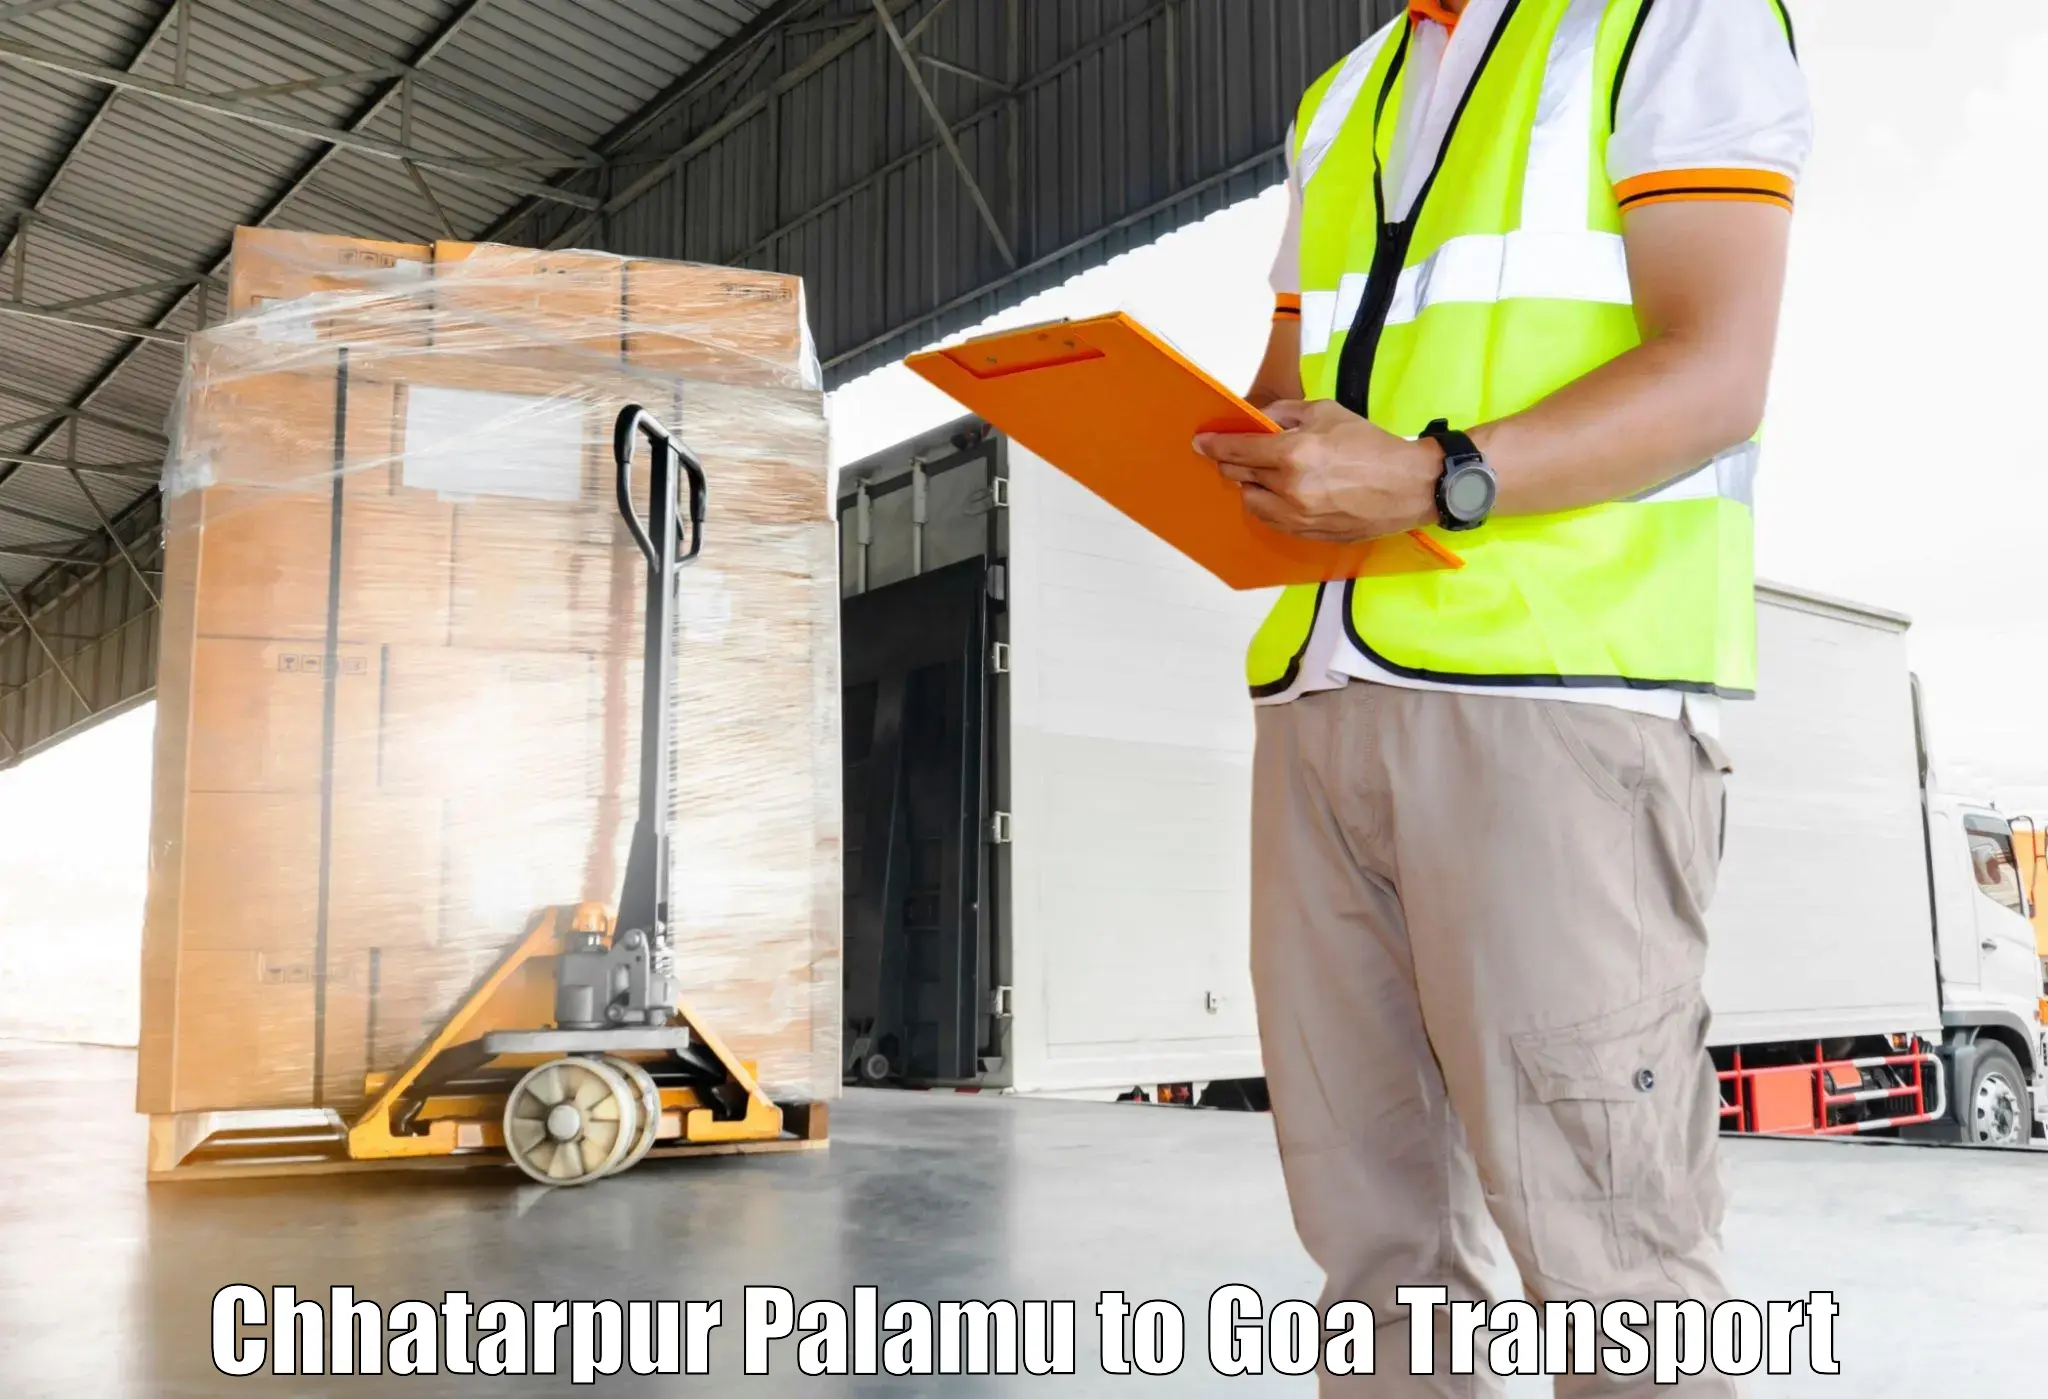 Shipping services Chhatarpur Palamu to Sanvordem